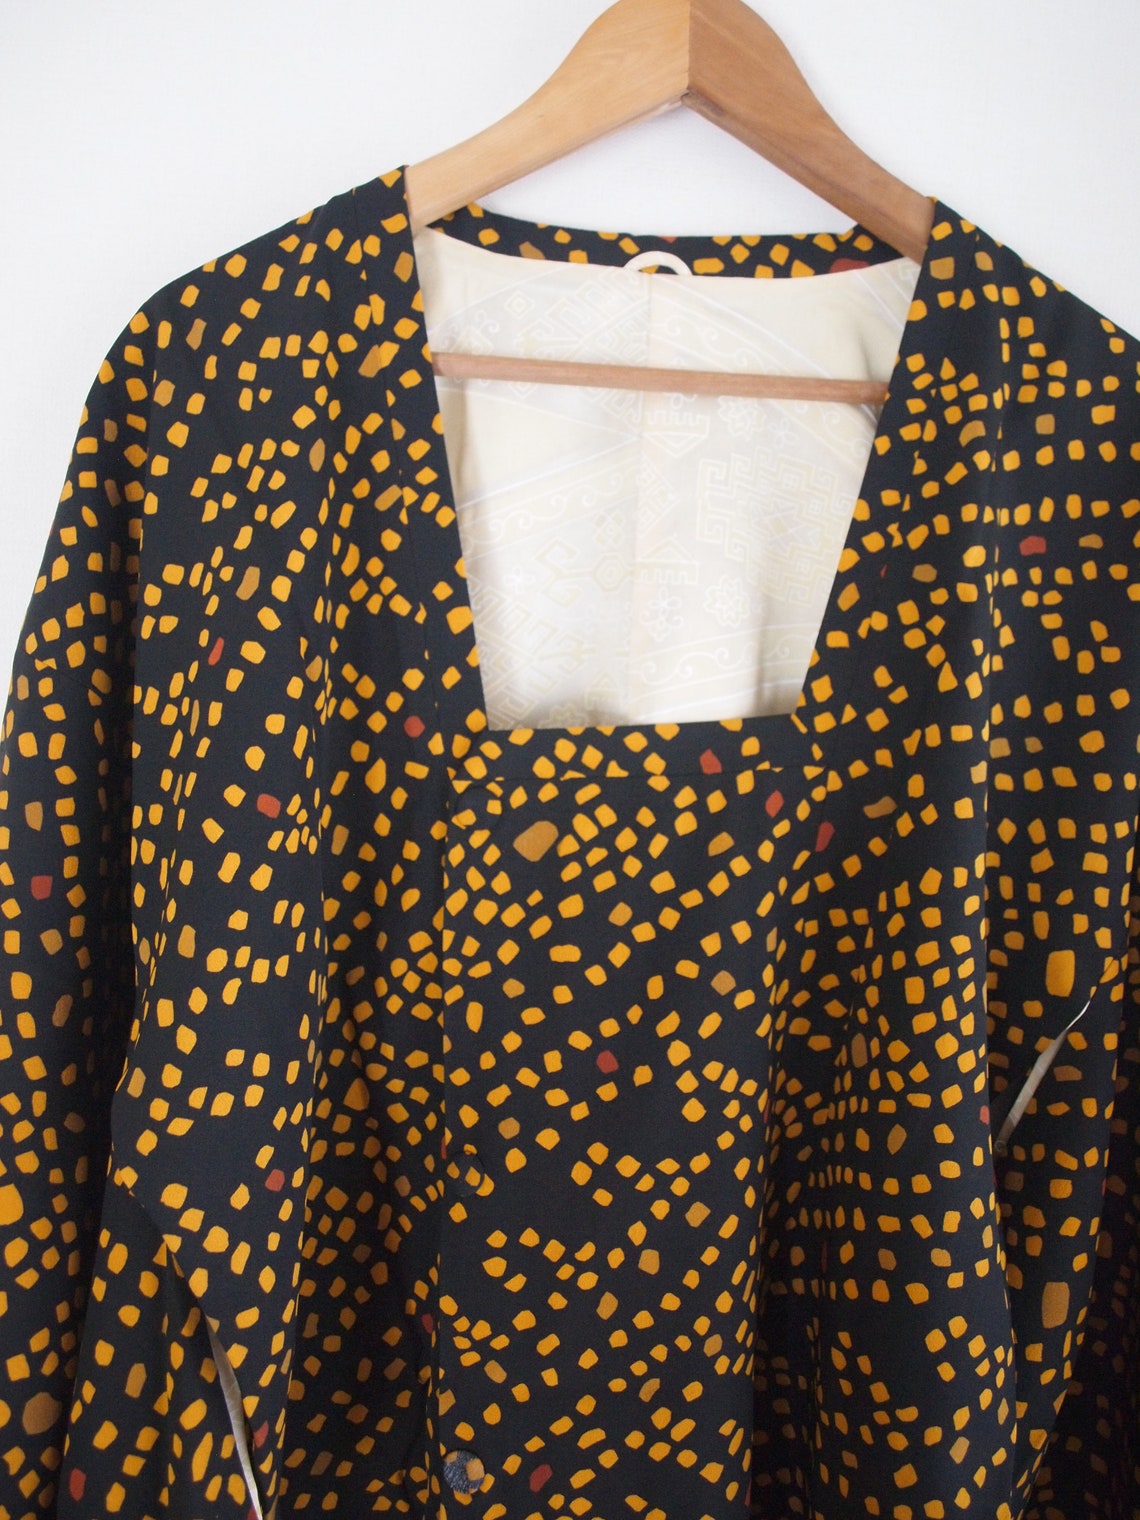 Vintage Black and yellow kimono Japanese long cardigan Ama | Etsy